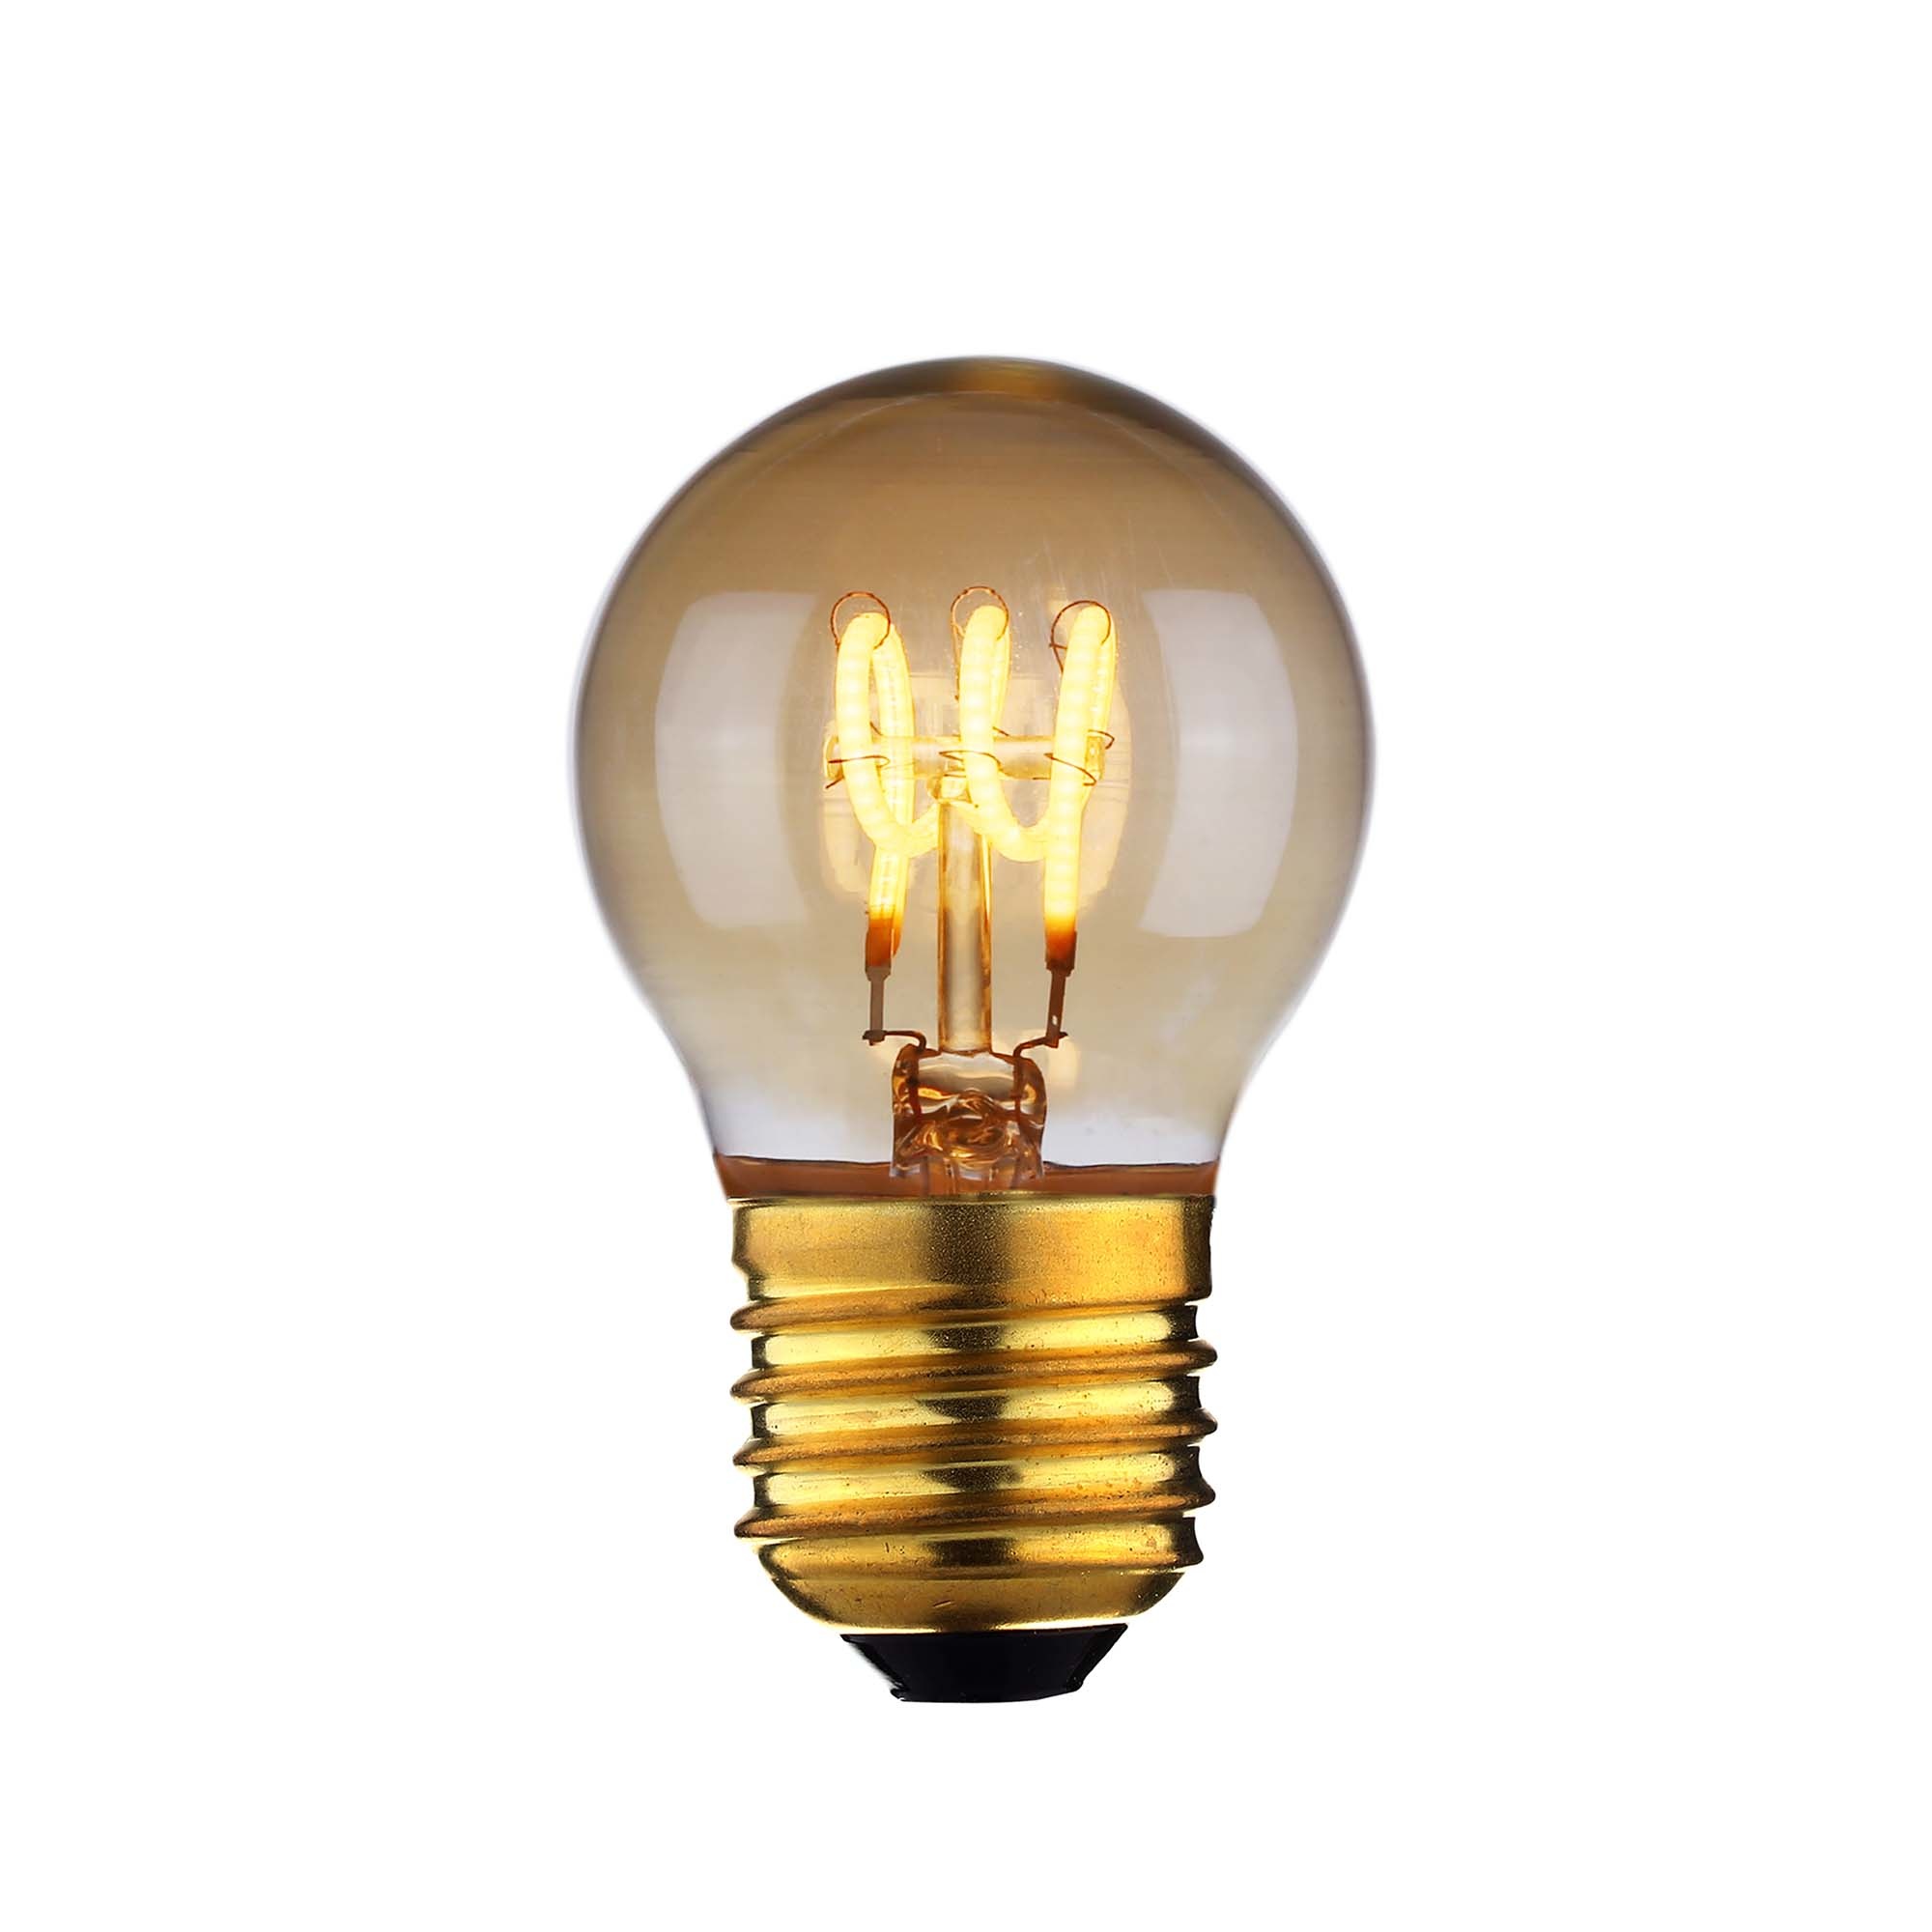 Gietvorm Centimeter Peuter Lamp LED E27 kogel 4W 120 LM 2200K Dimbaar amber Highlight L2506.36 -  Lamponline.nl